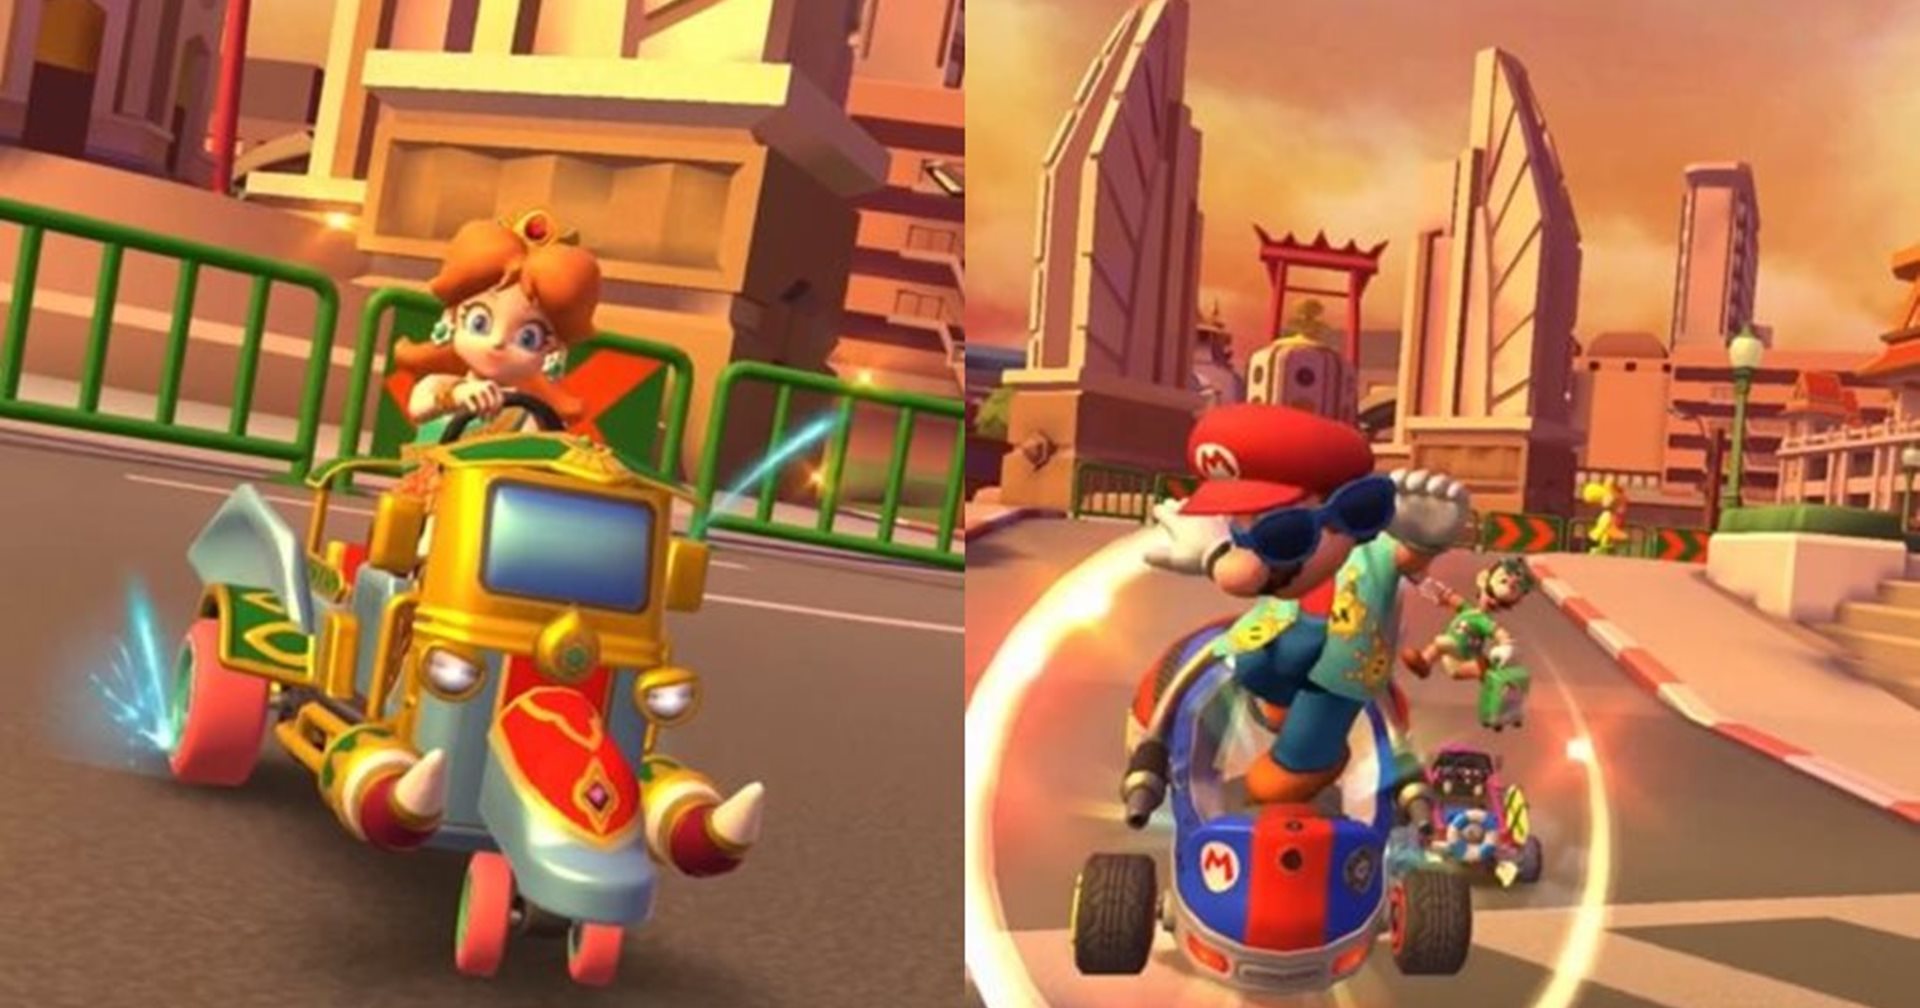 เปิดข้อมูลสนามแข่งกรุงเทพในเกม Mario Kart Tour ที่มาพร้อมรถตุ๊กตุ๊ก